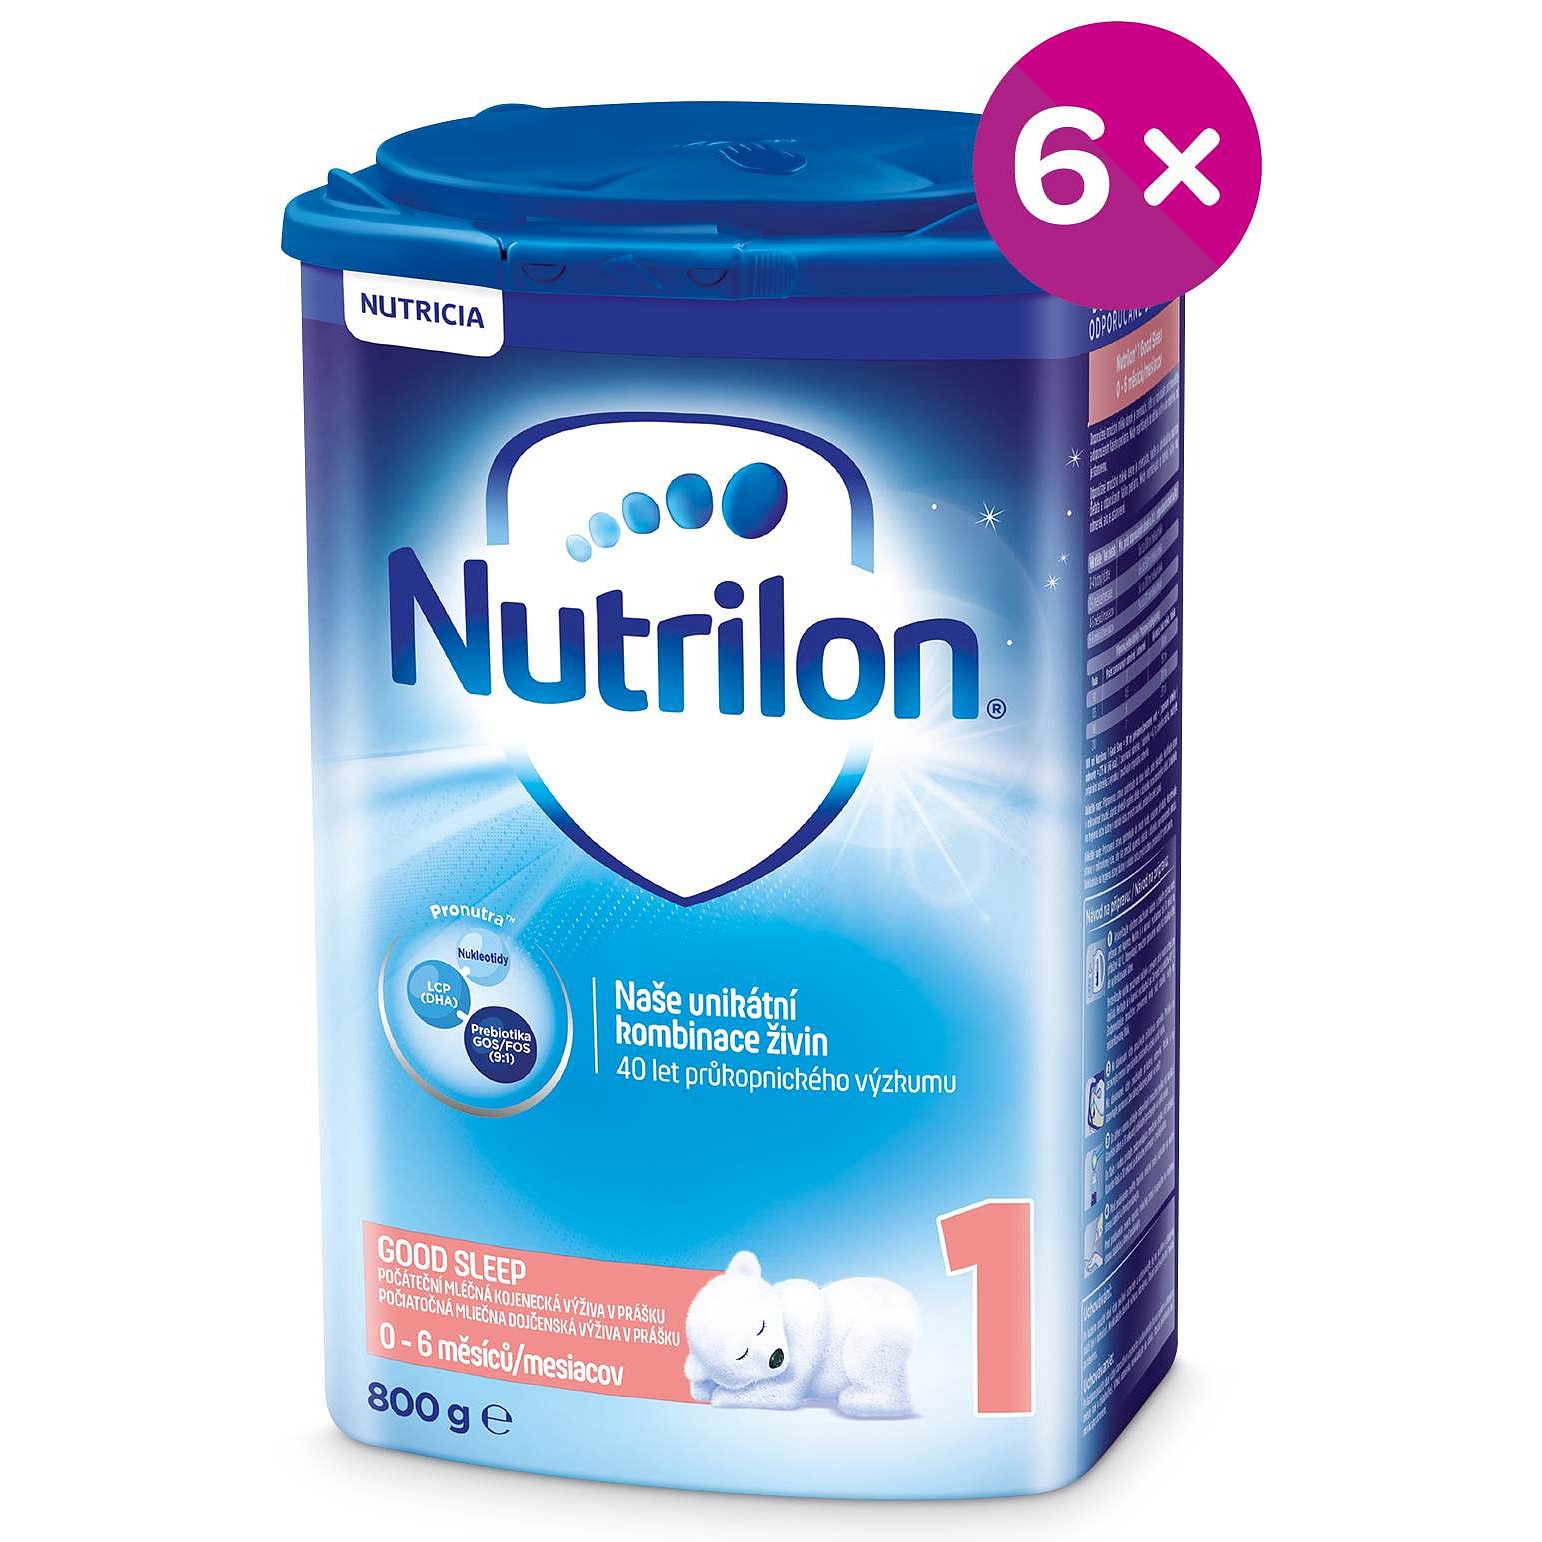 Nutrilon 1 Good Sleep 800g - 6 pack